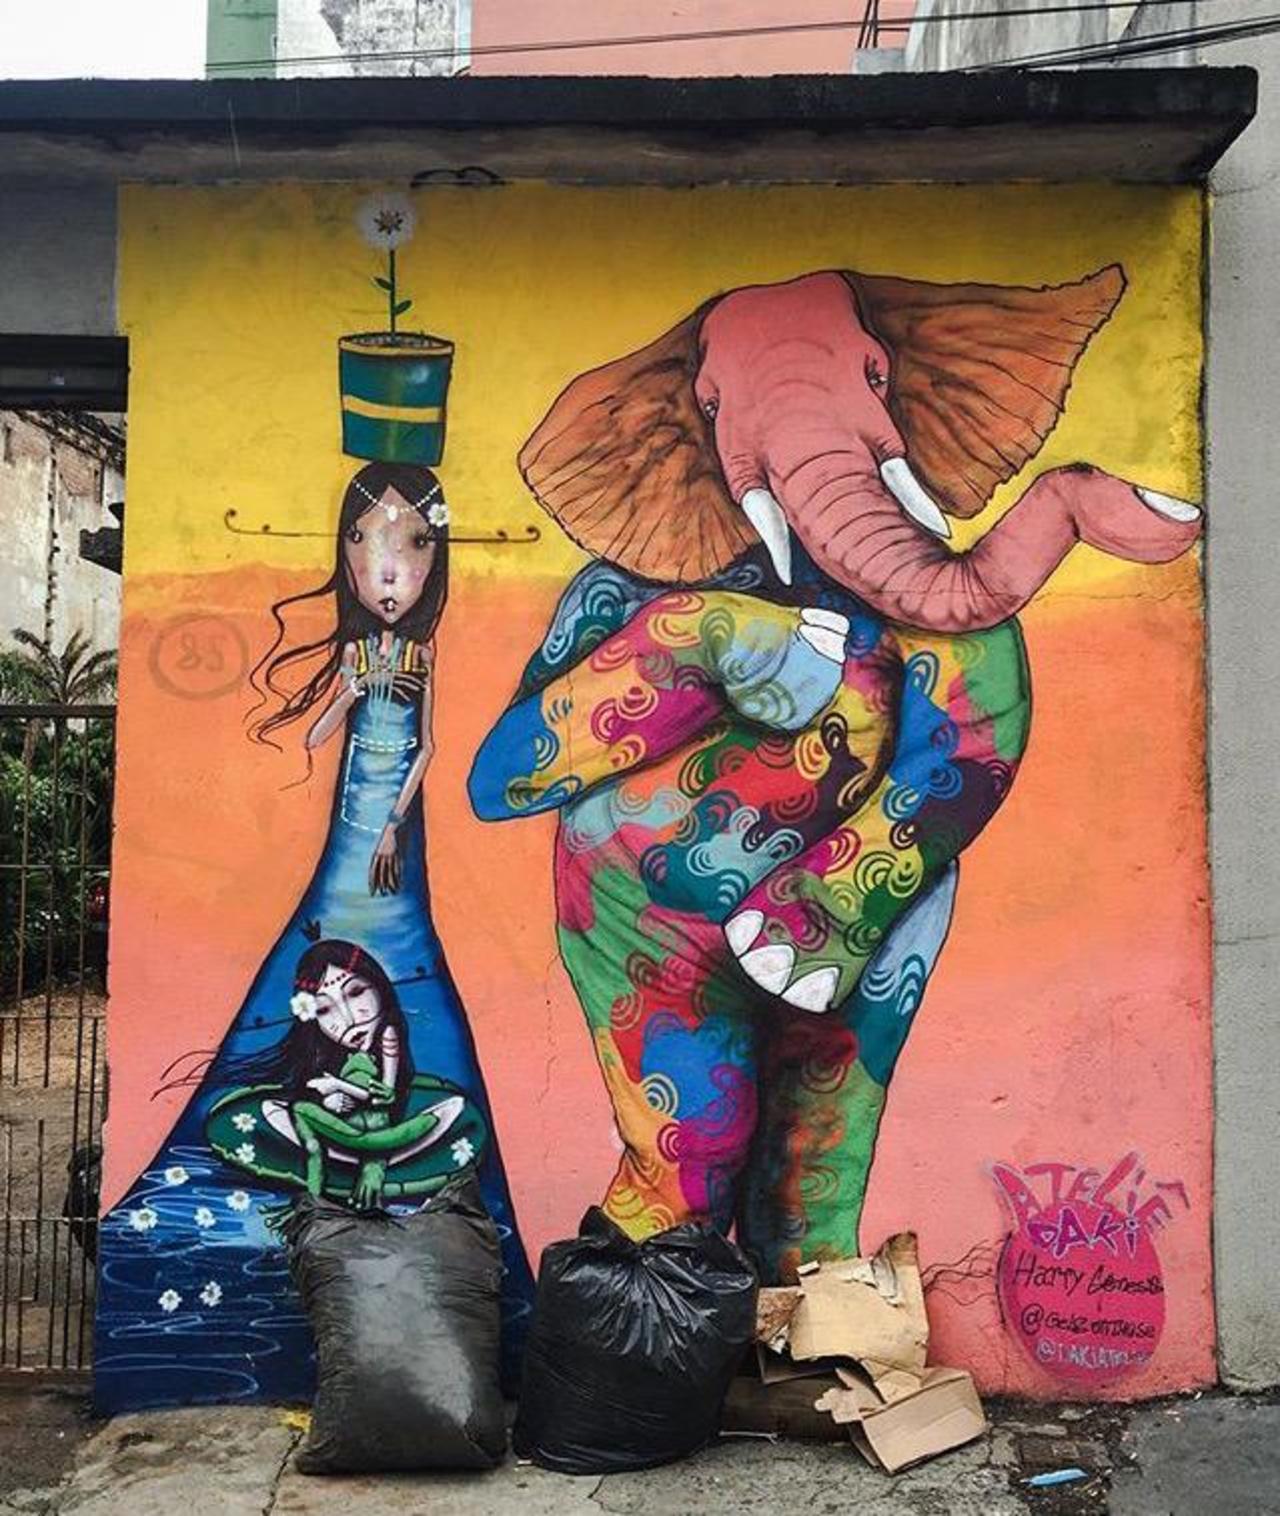 RT @mzajaeh: Street Art by Harry Geneis & Gelson in São Paulo 

#art #mural #graffiti #streetart http://t.co/ovle0o8JHZ